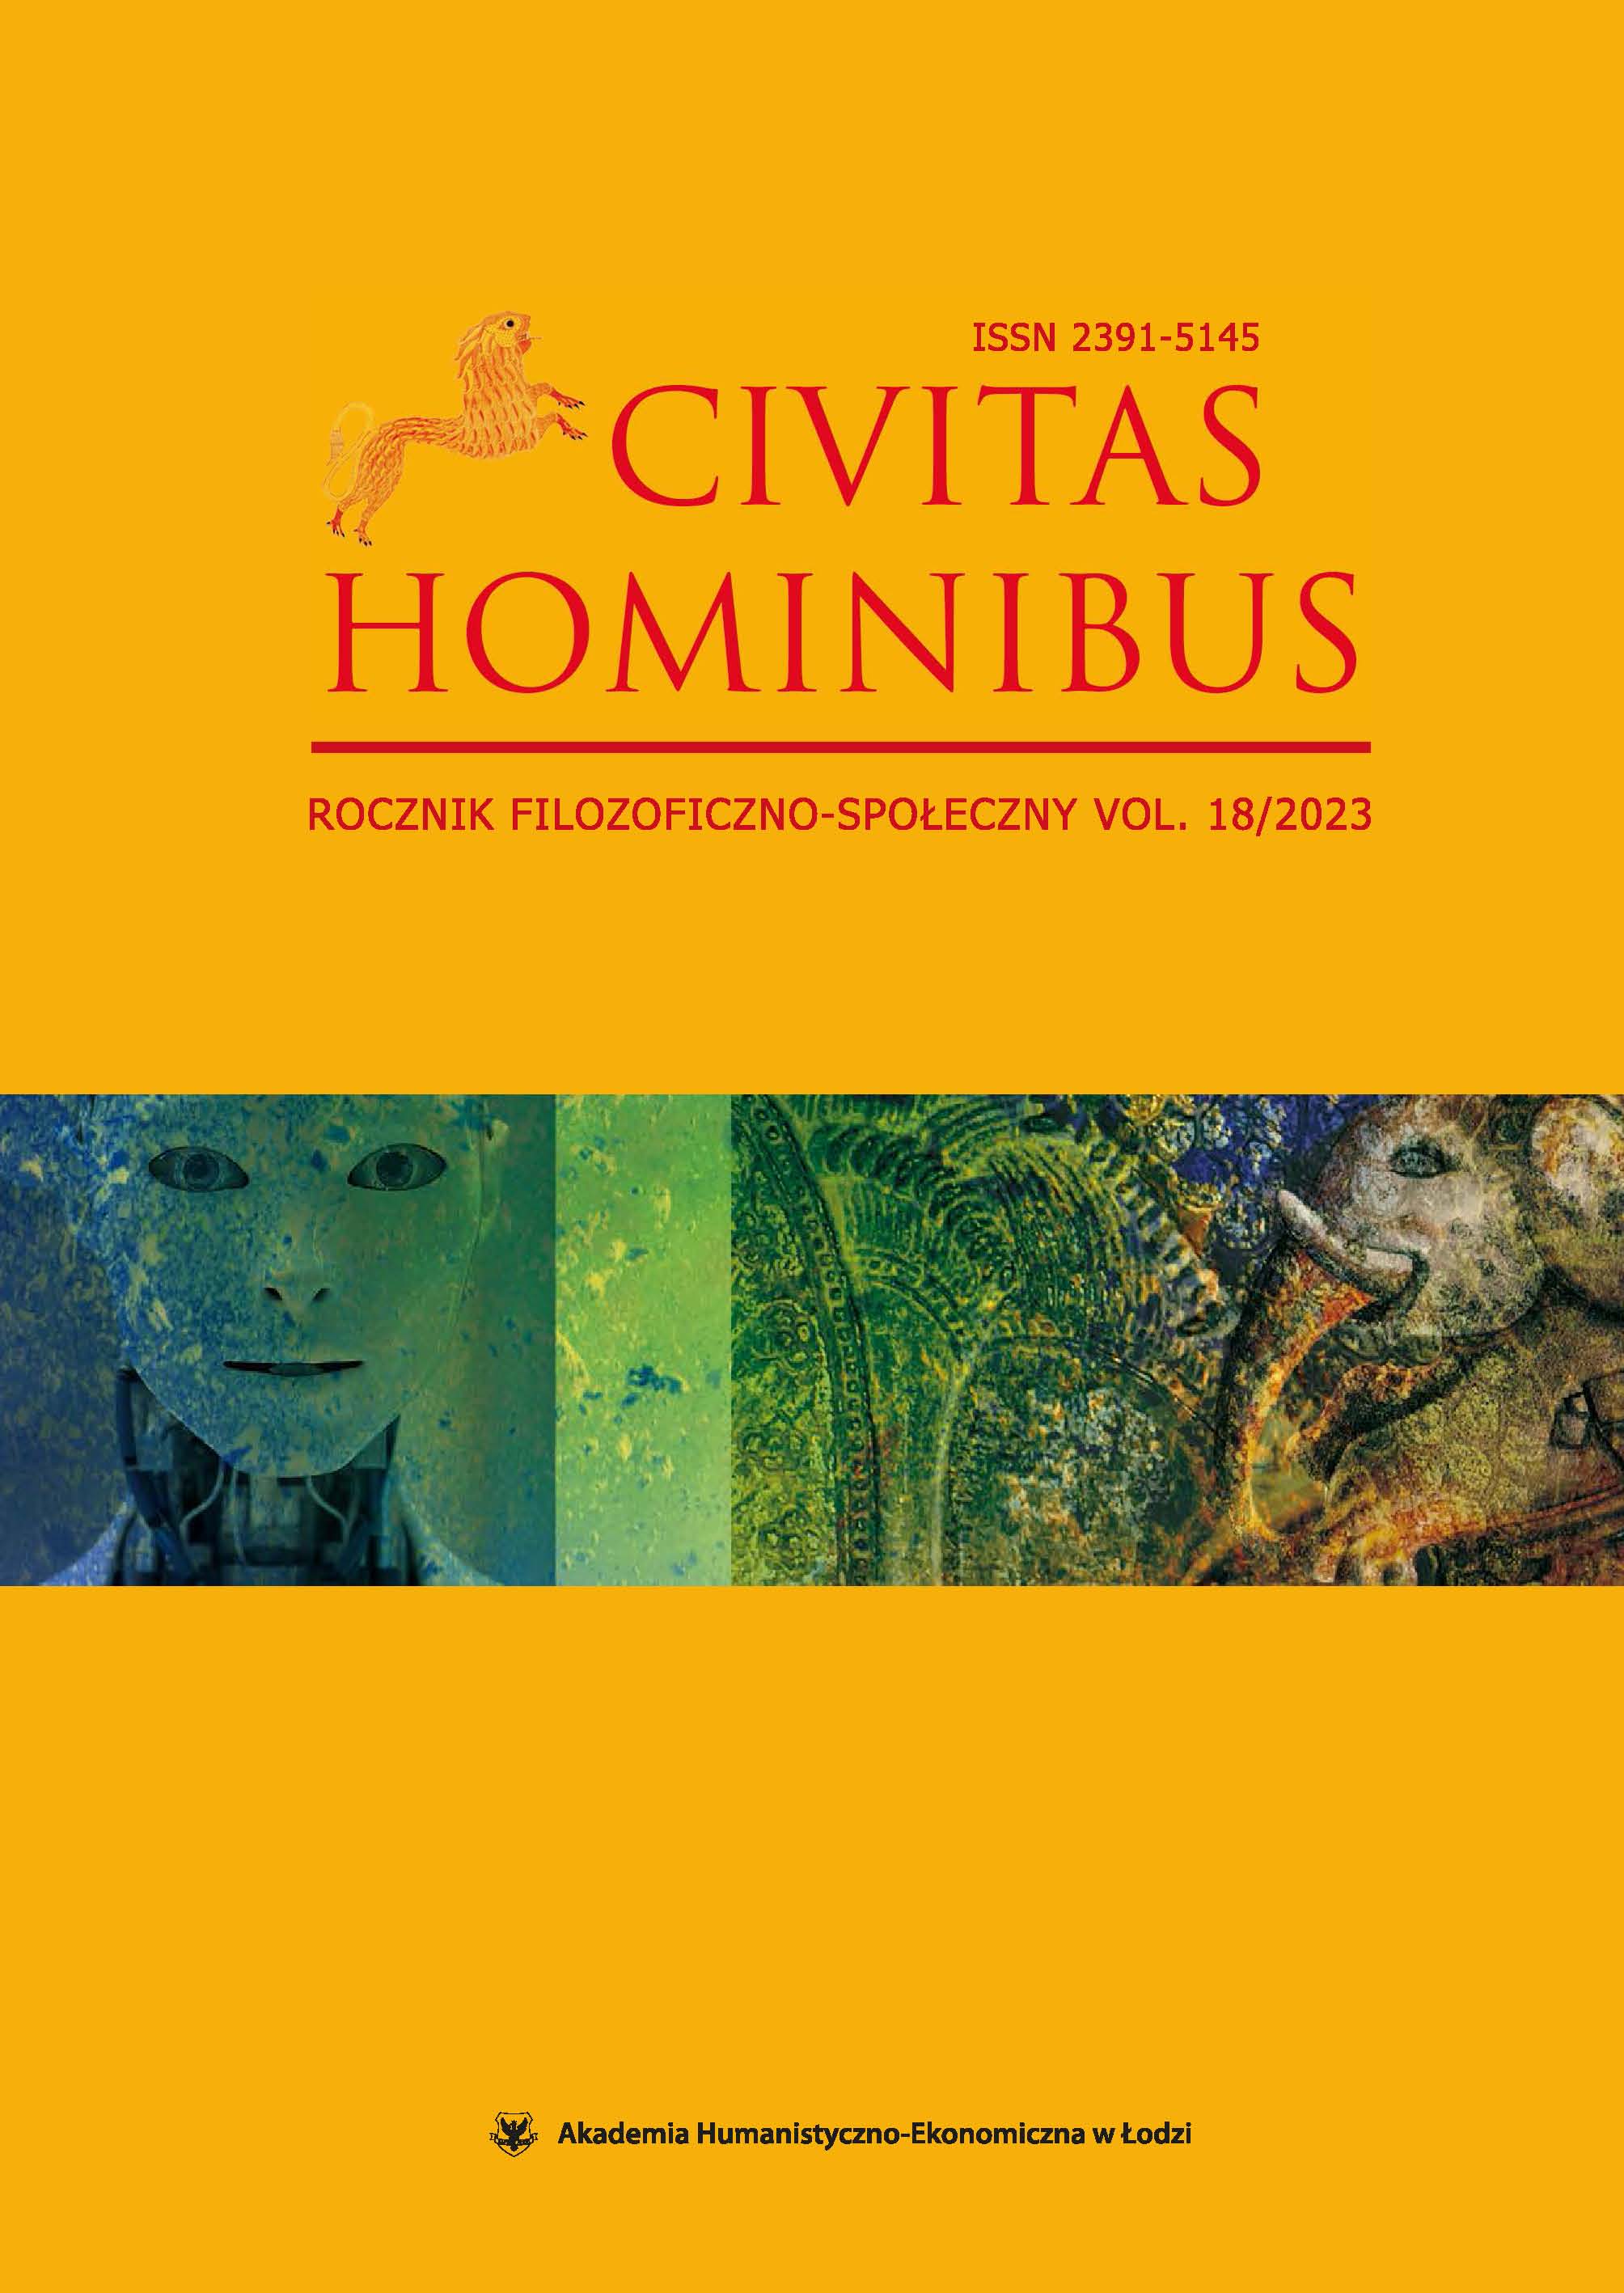 Civitas Hominibus XVIII